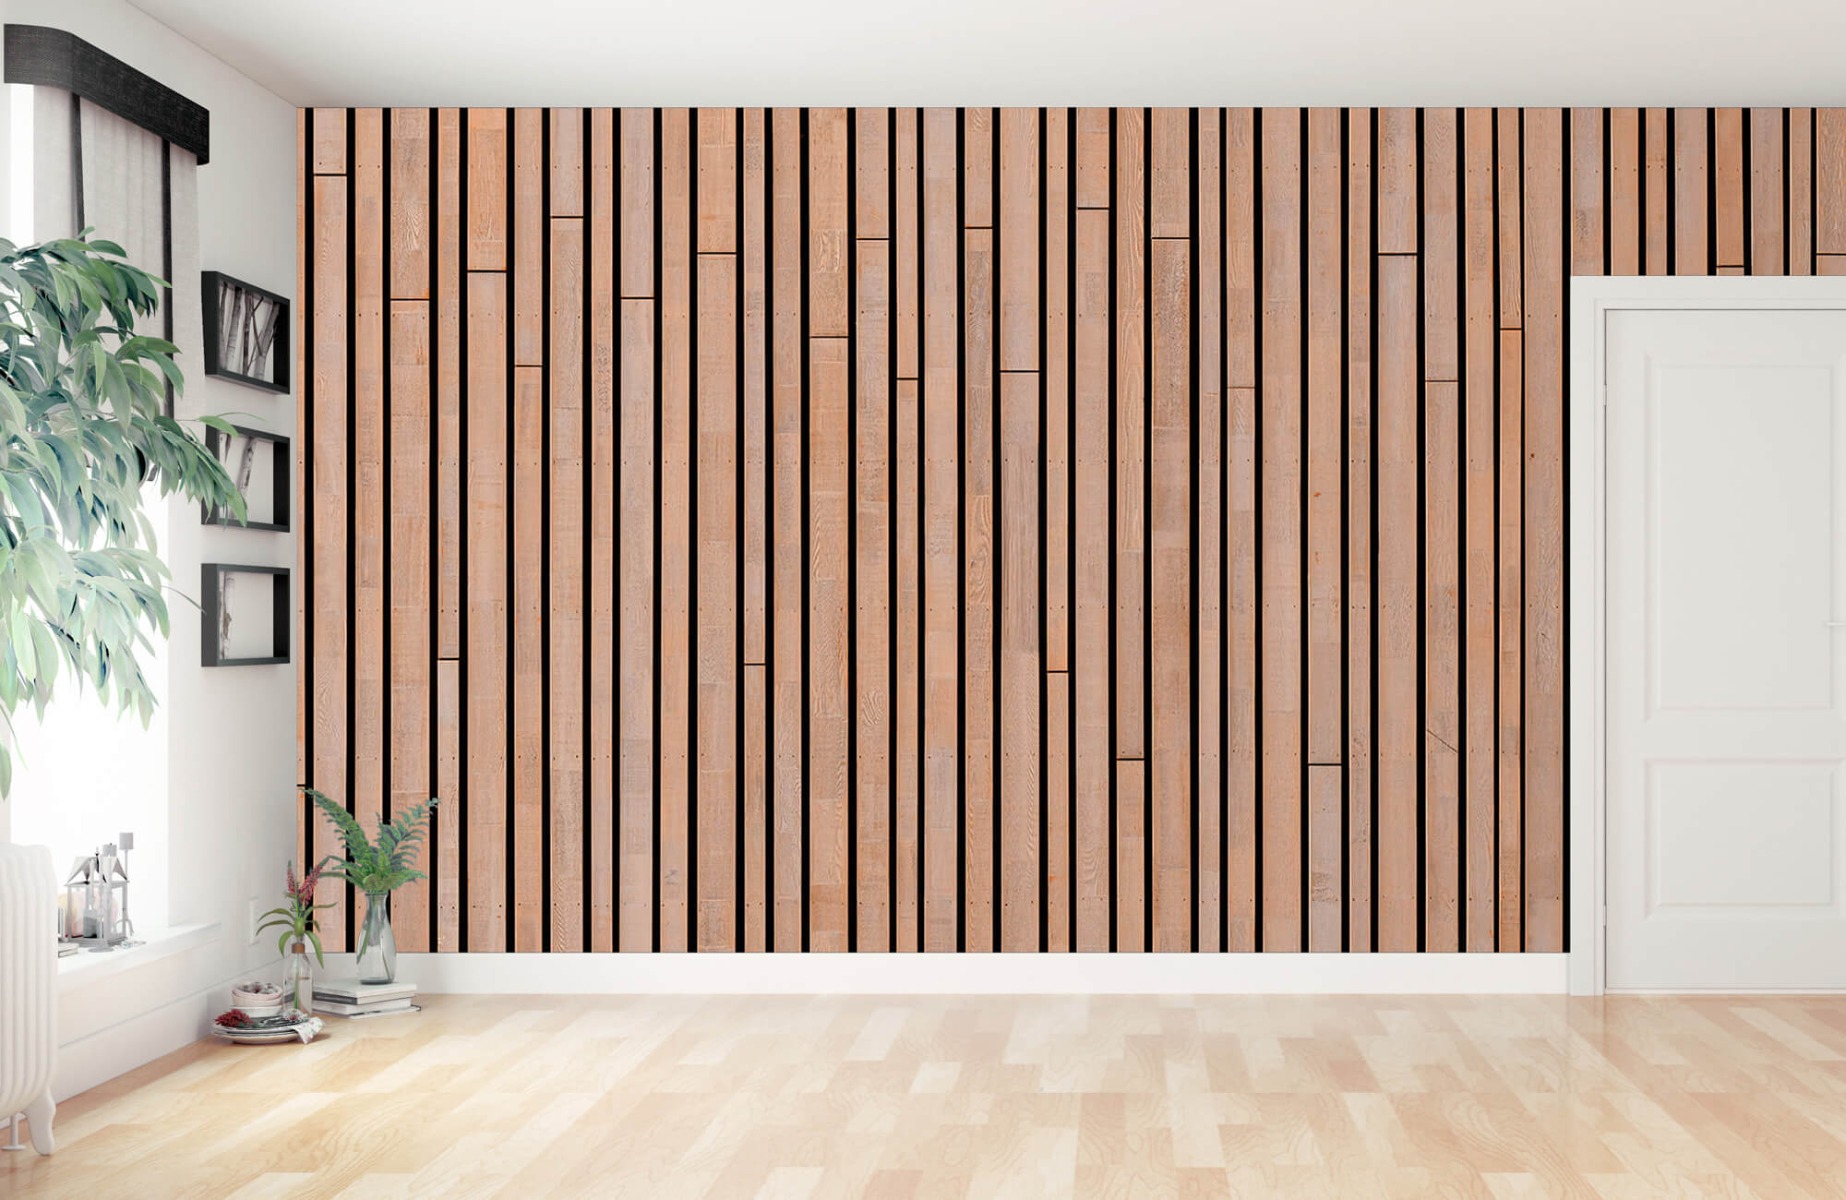 Wooden wallpaper - Wooden planks  - Bedroom 14